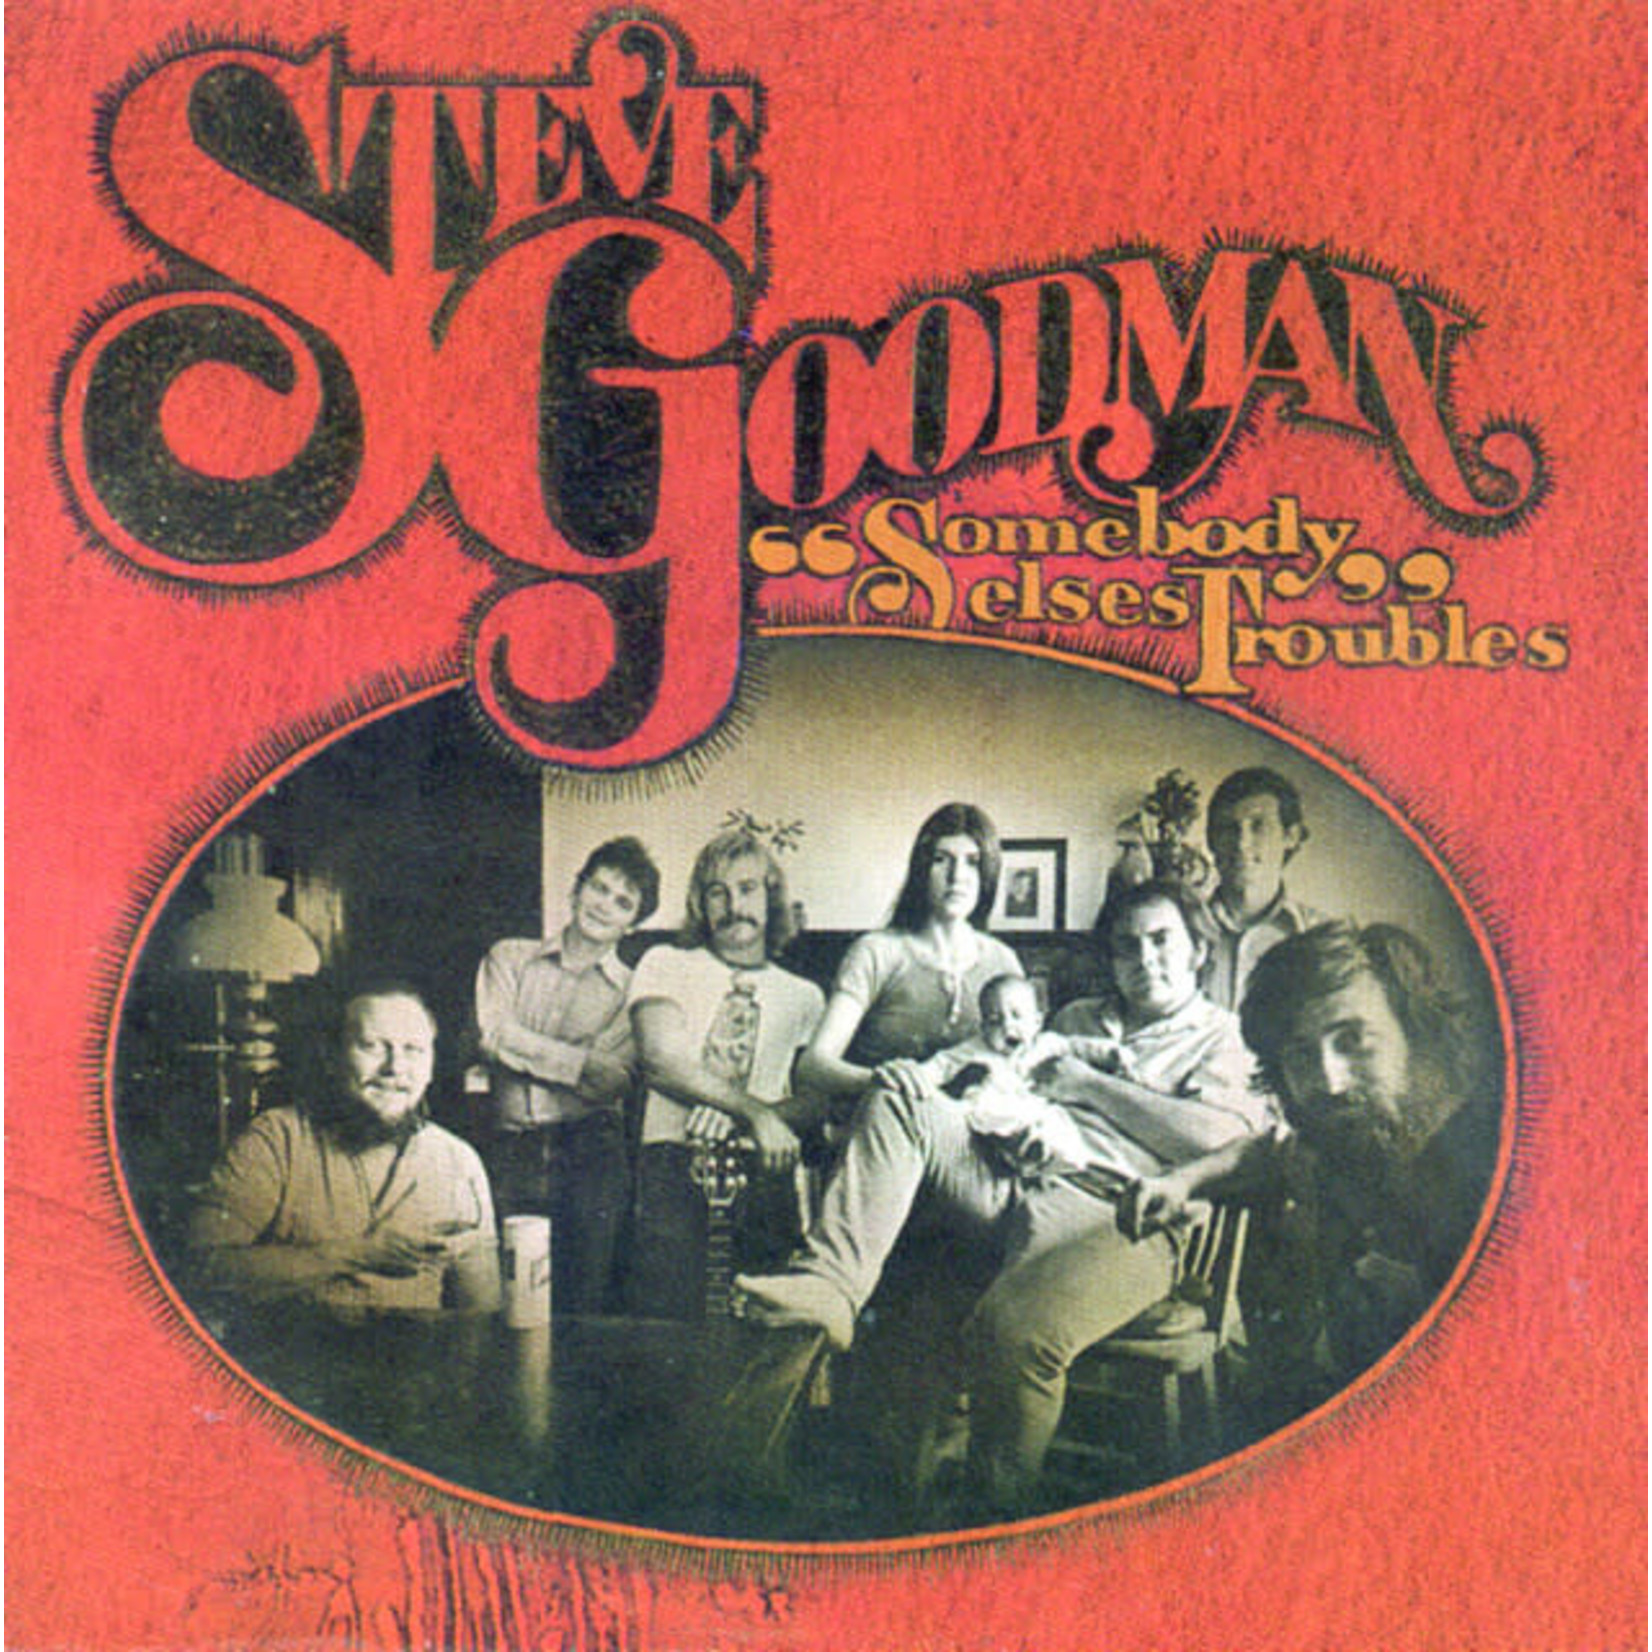 [Vintage] Steve Goodman - Somebody Else's Troubles